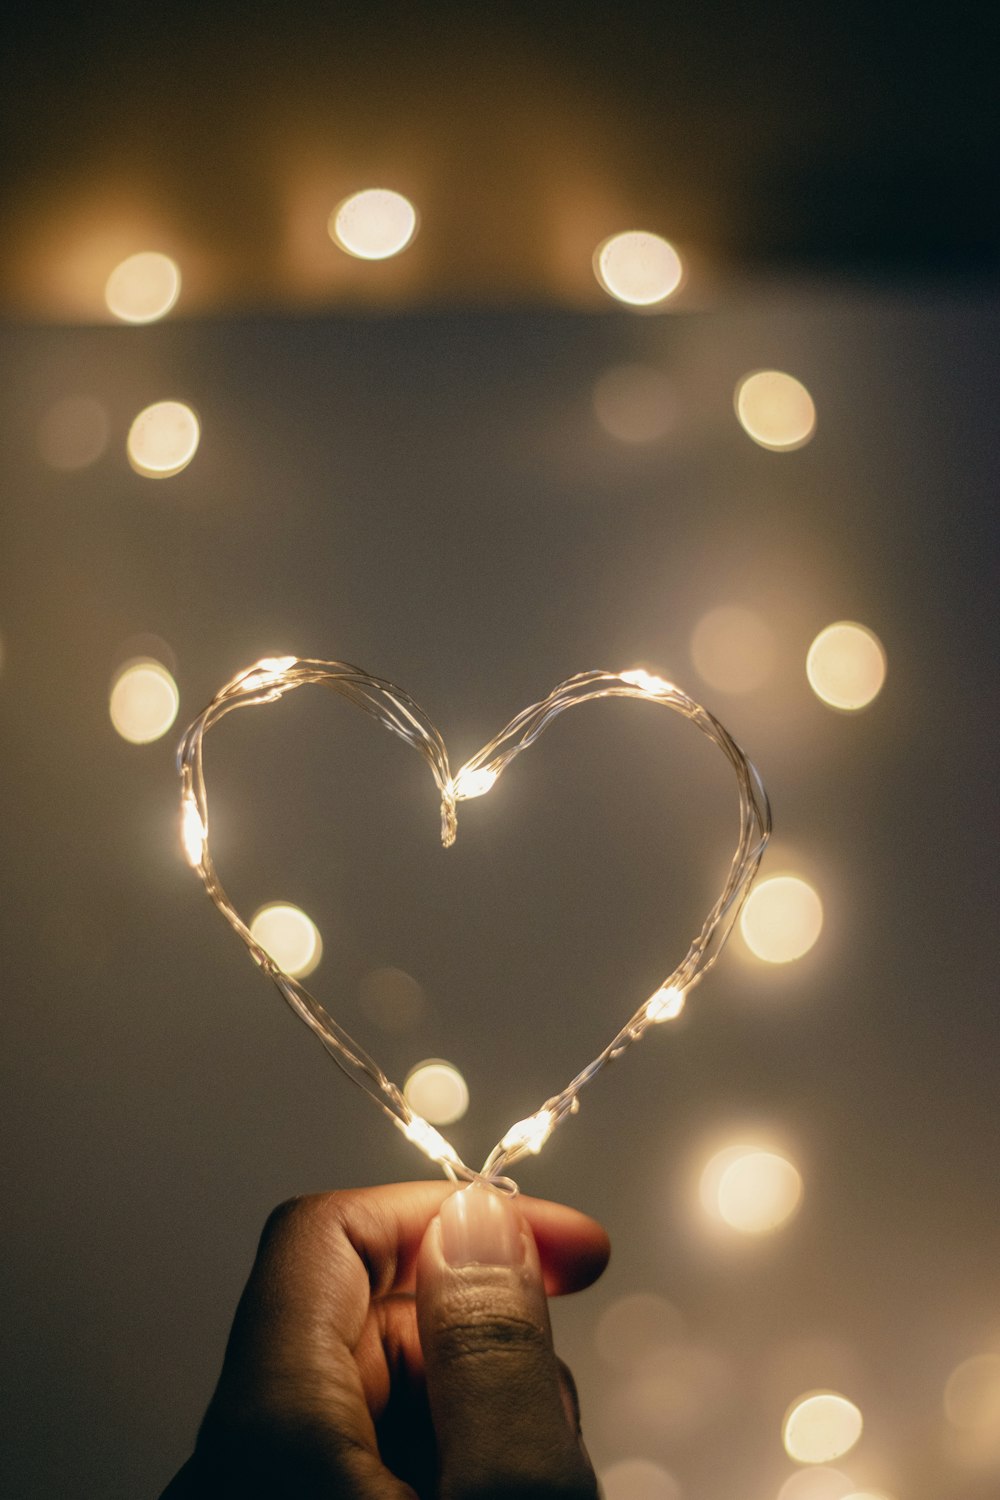 una mano sosteniendo una cadena de luces en forma de corazón